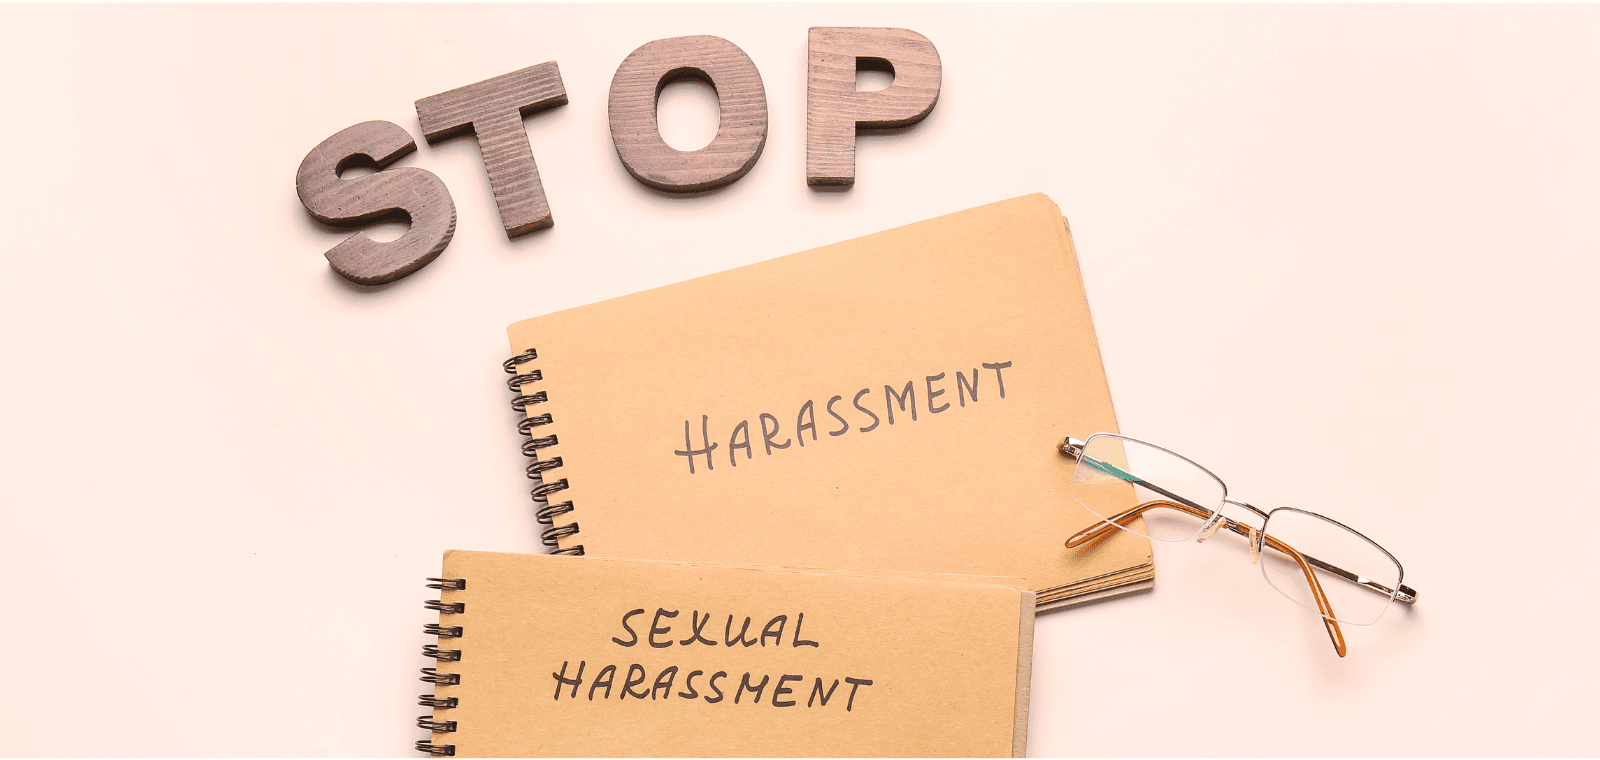 Agissements sexistes et harcèlement moral au travail : les caractériser, les prévenir et les sanctionner